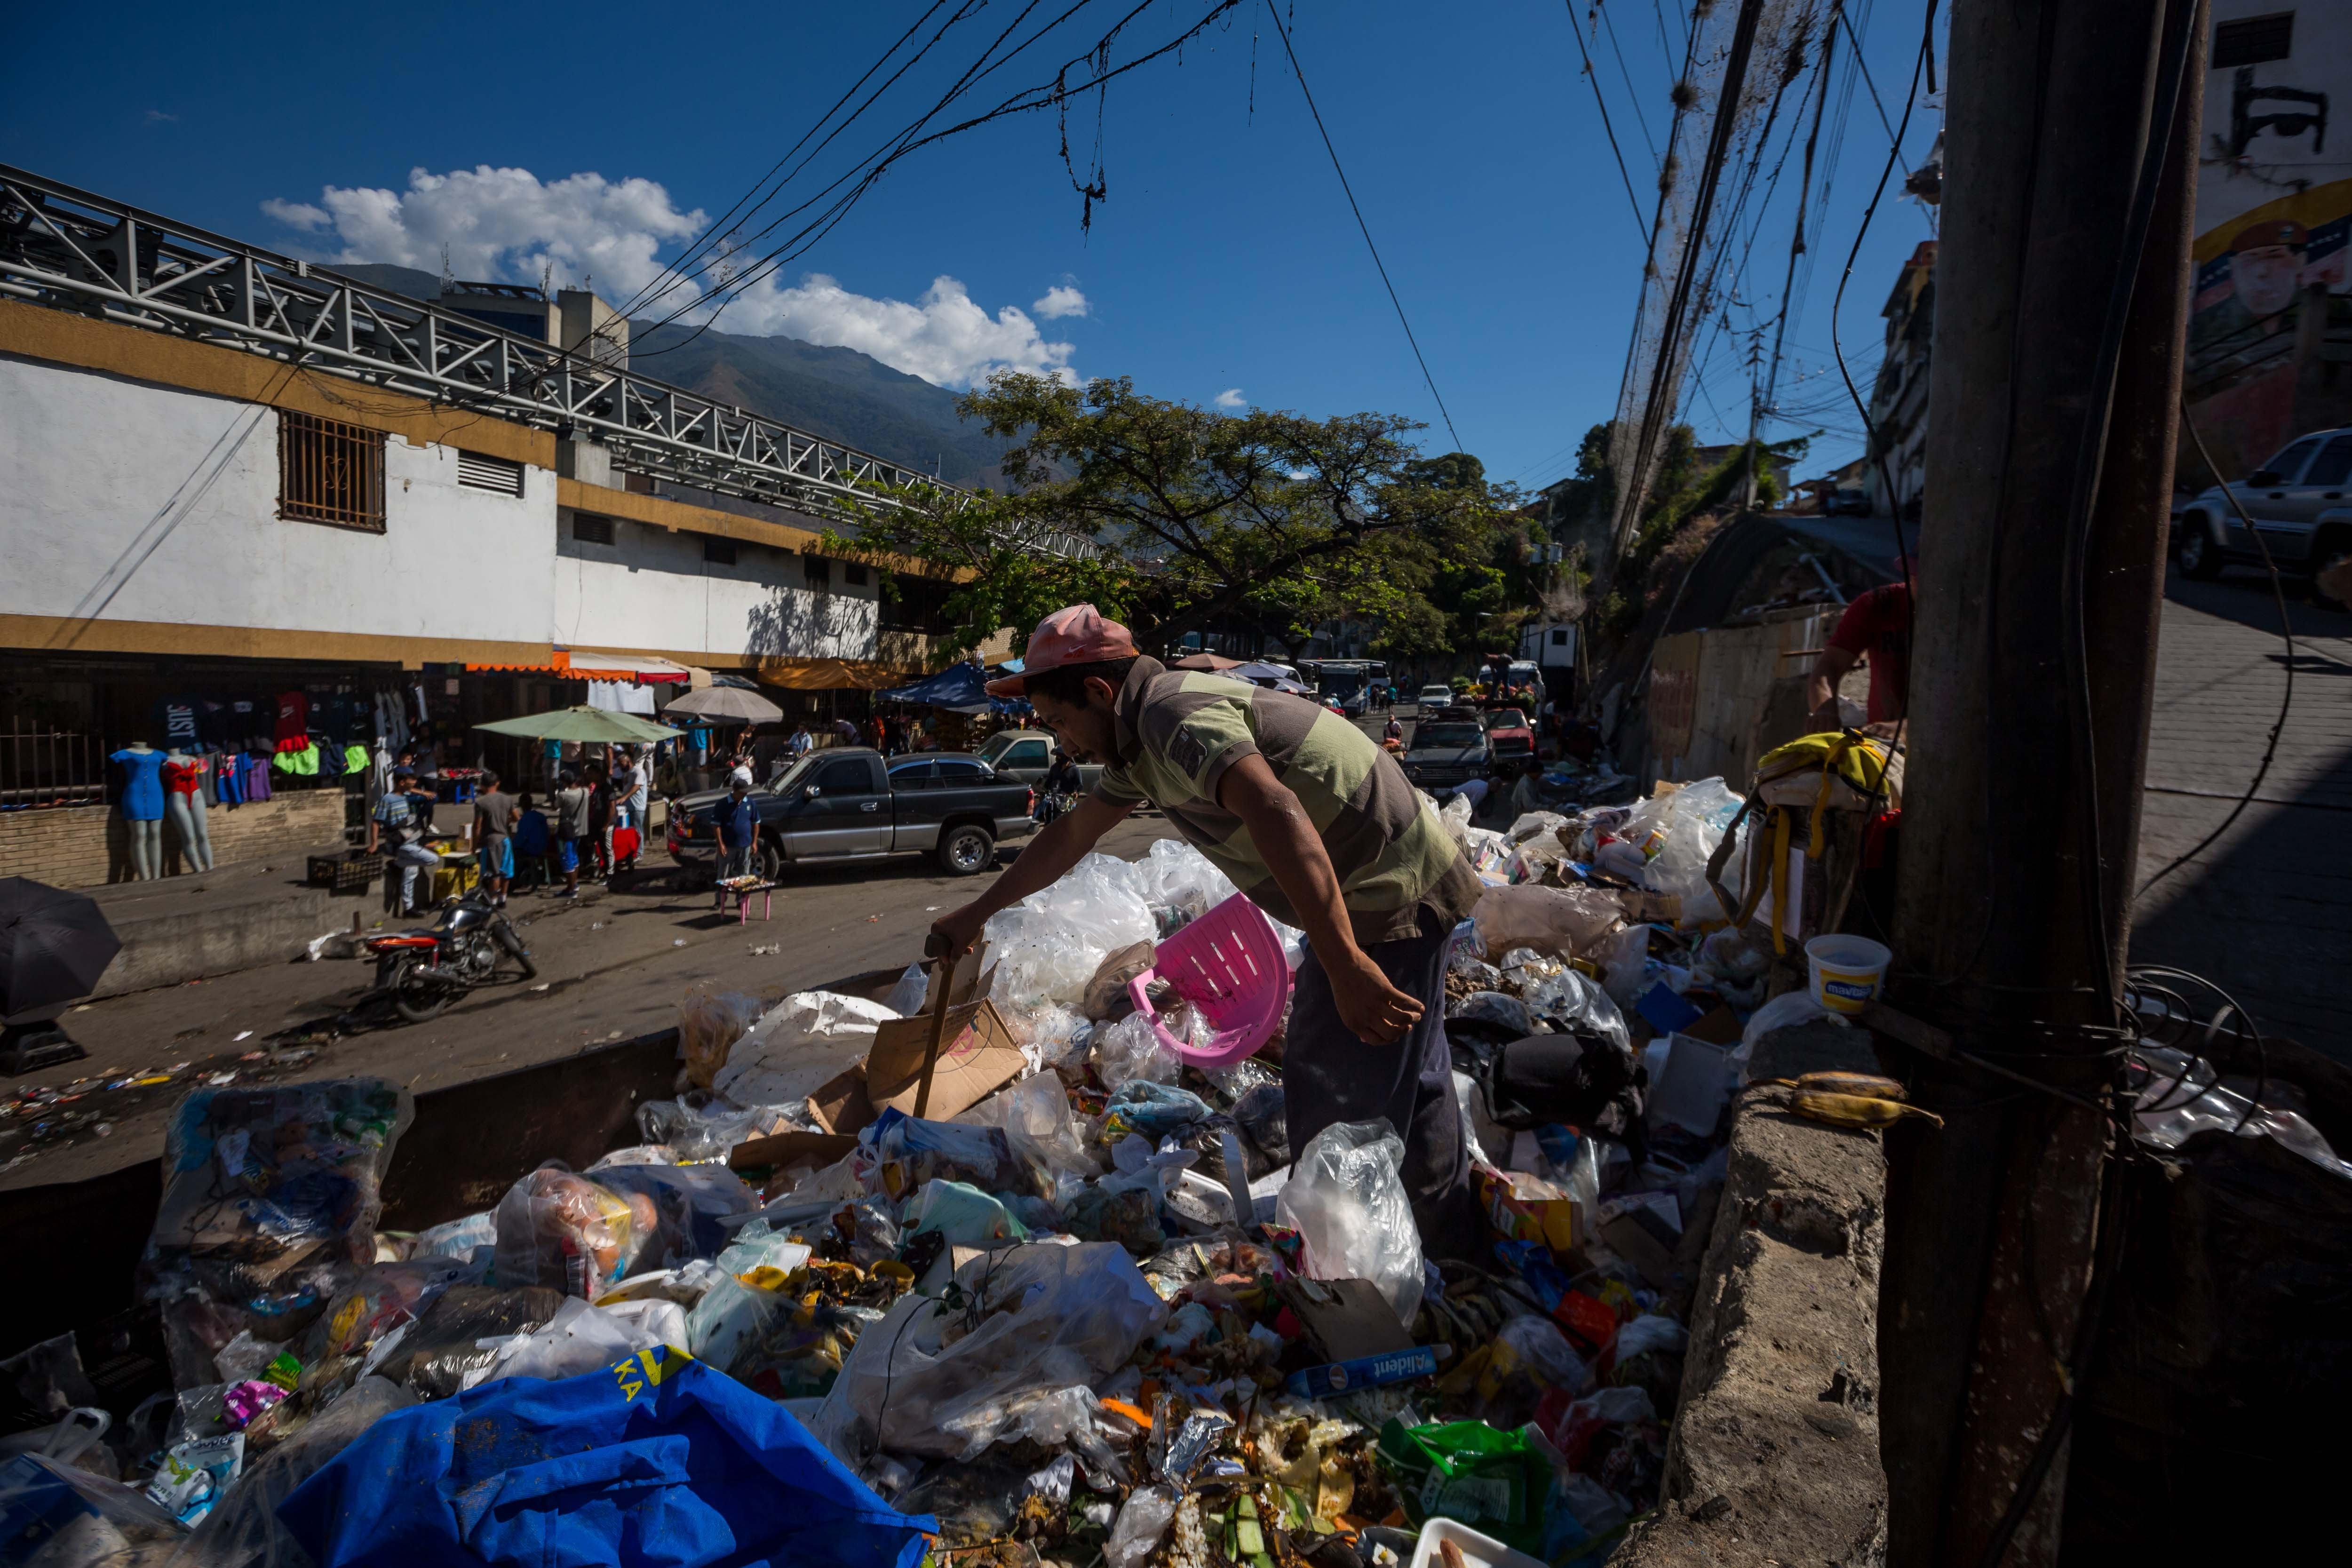 Sobrevivir hurgando entre la basura: La “otra” realidad de una Venezuela pobre